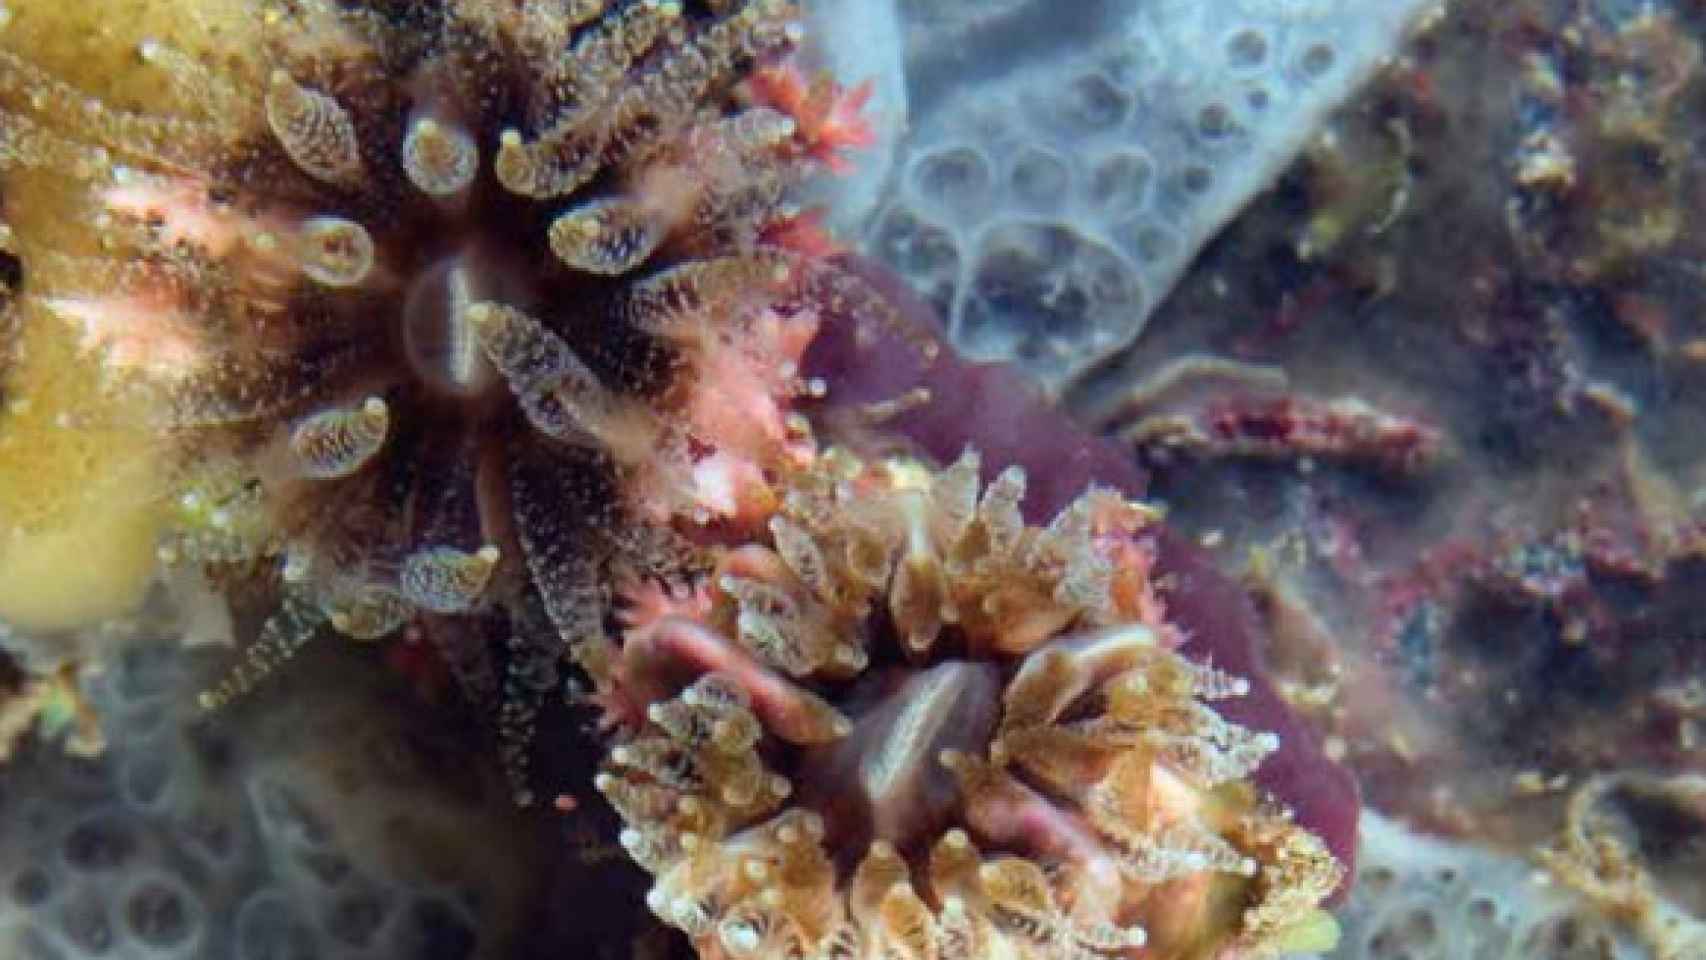 Corales solitarios pertenecientes a la familia Caryophyllidae